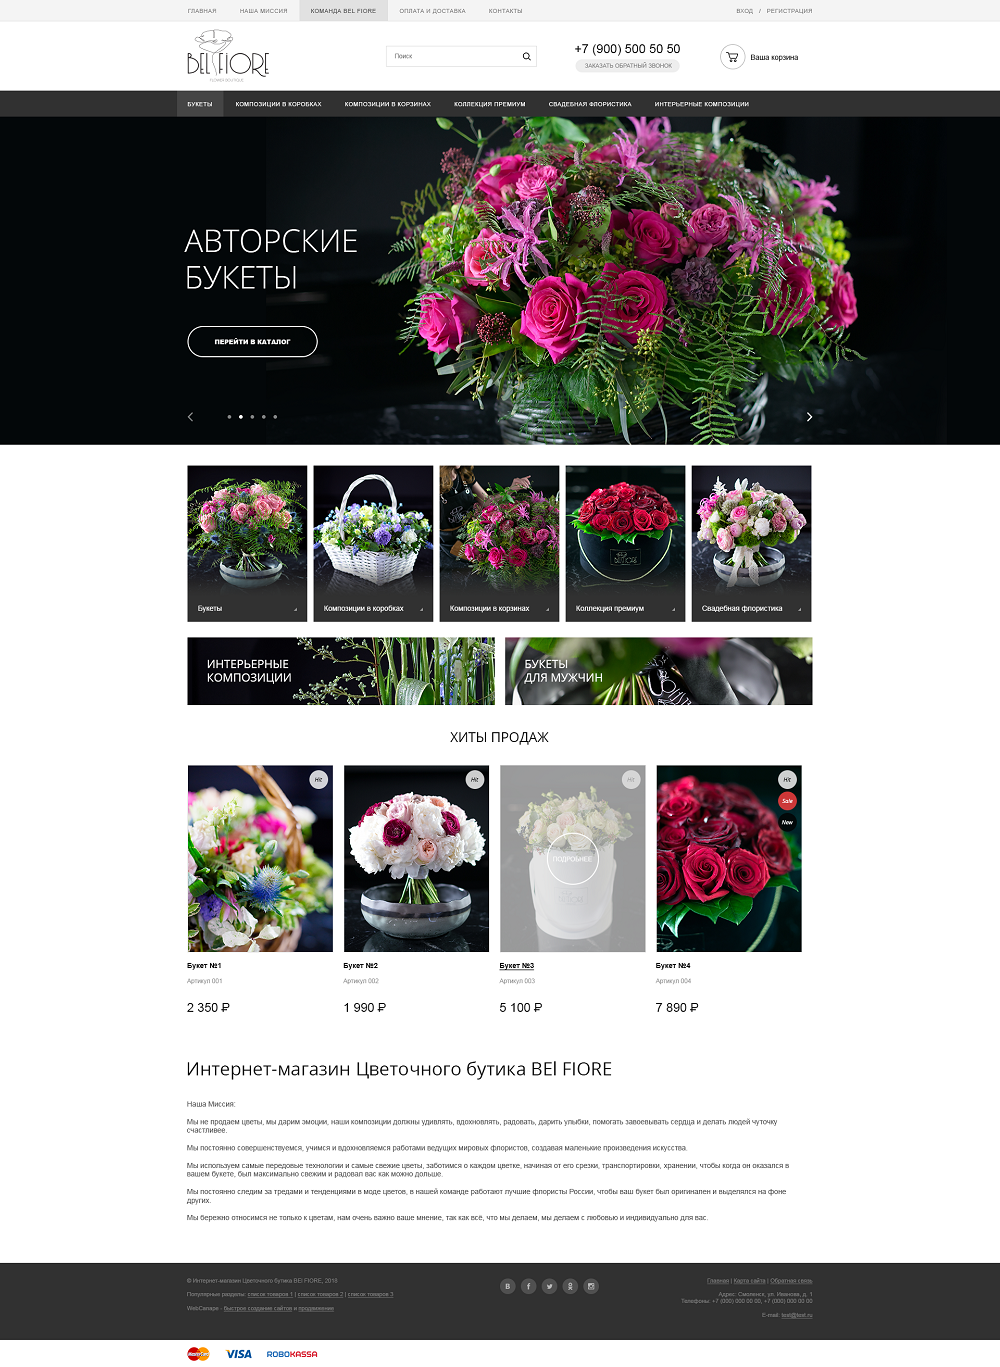 Разработка сайта интернет-магазина цветочного бутика BEl FIORE